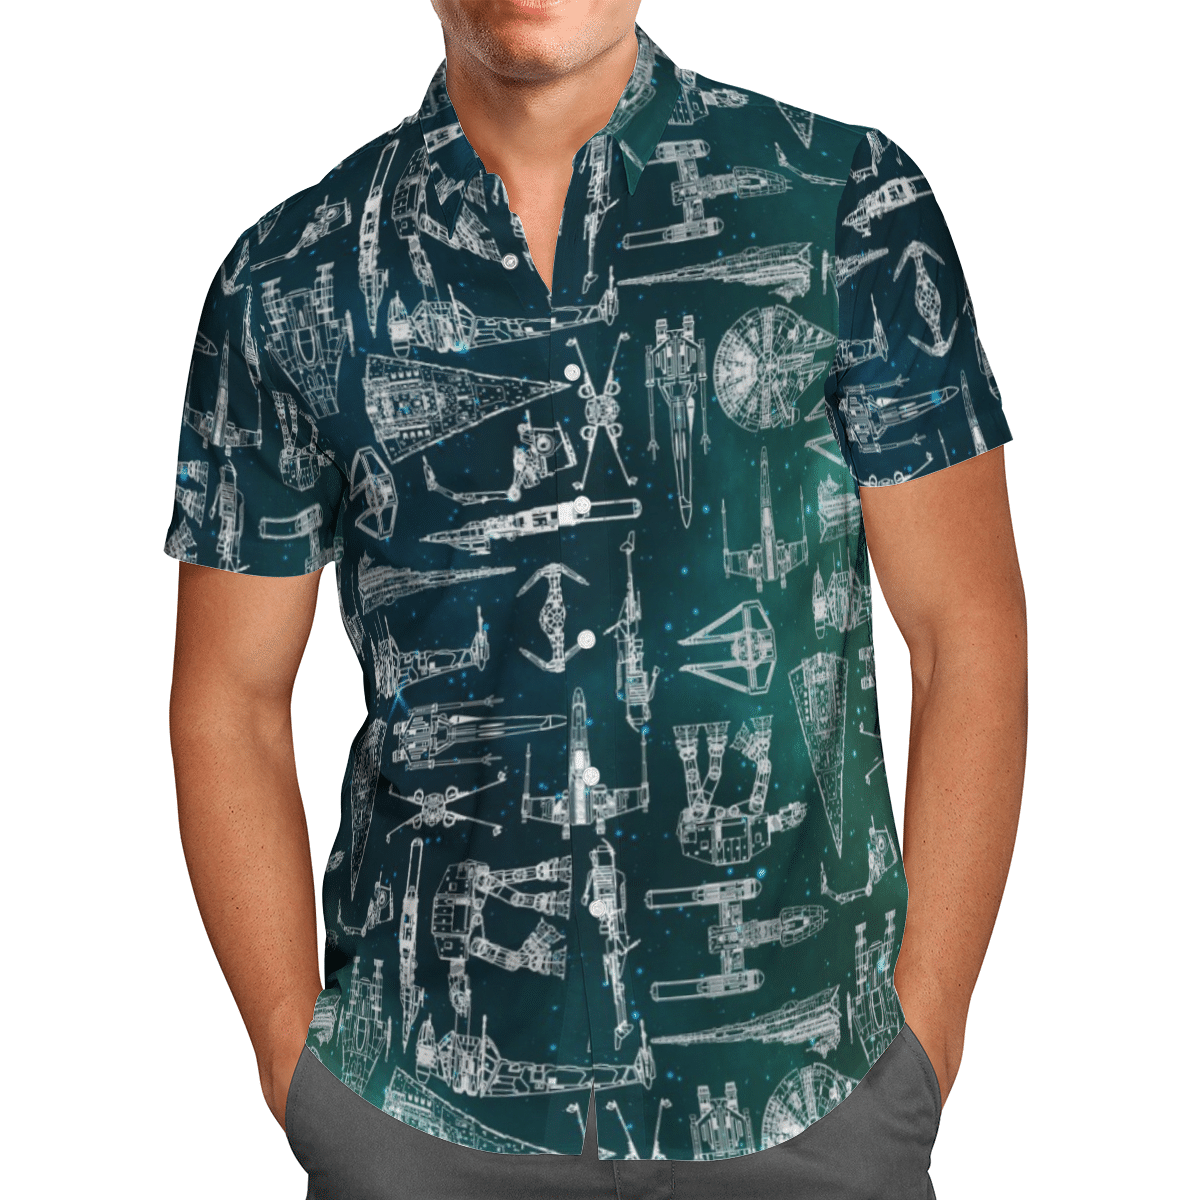 Star wars starships hawaii shirt and short 7